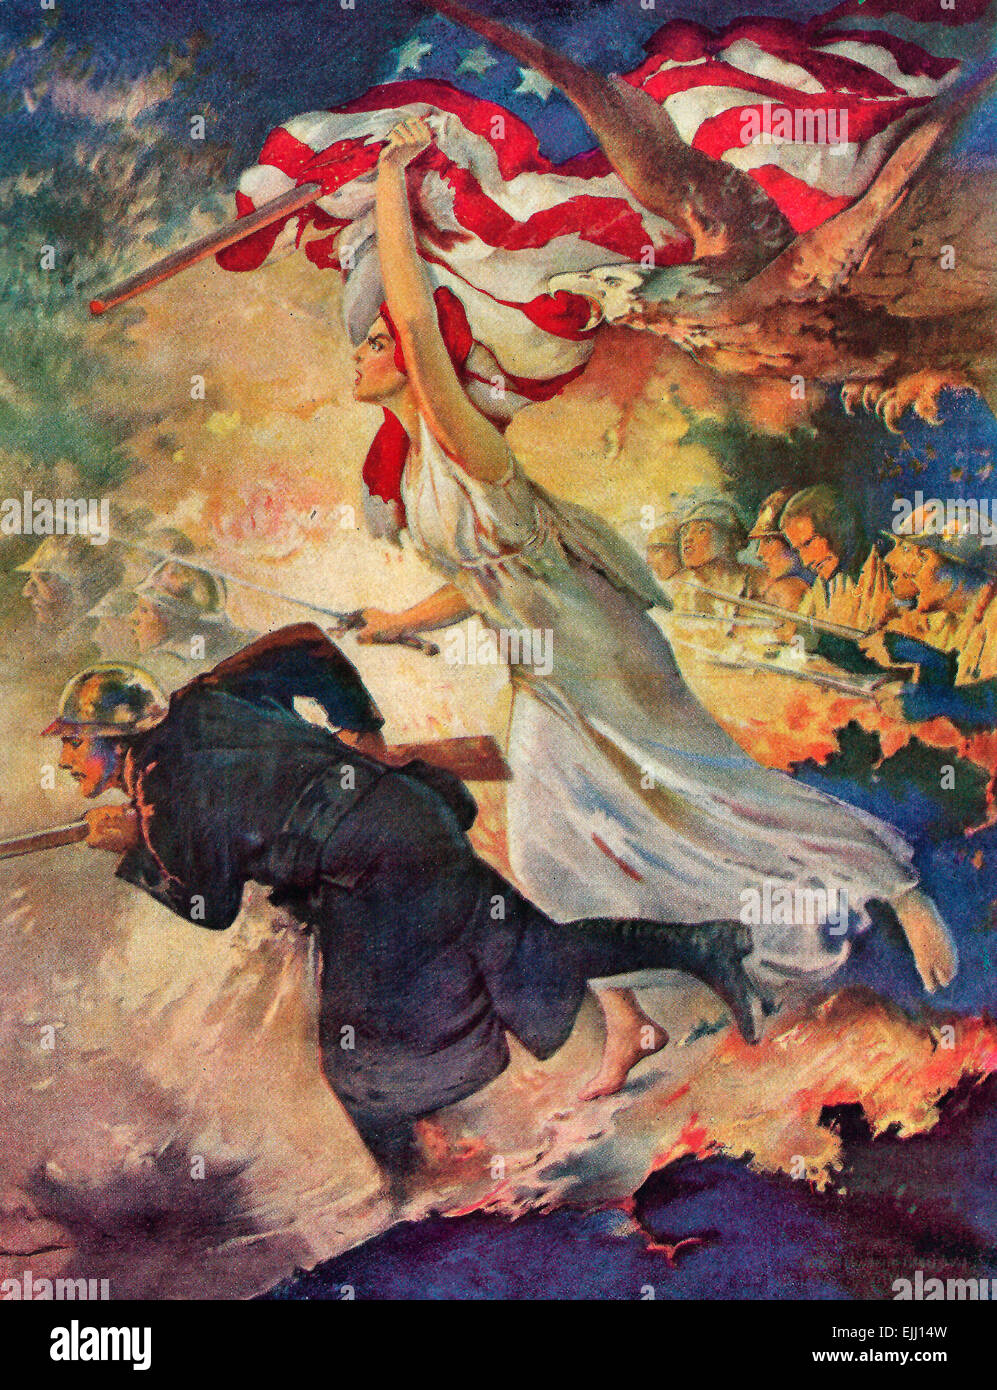 "Carry On!" - ein Soldat stürmt mit einer Pistole und Columbia mit einem Schwert neben ihm.  Eine Illustration Verherrlichung Amerikas Engagement im ersten Weltkrieg, 1917 Stockfoto